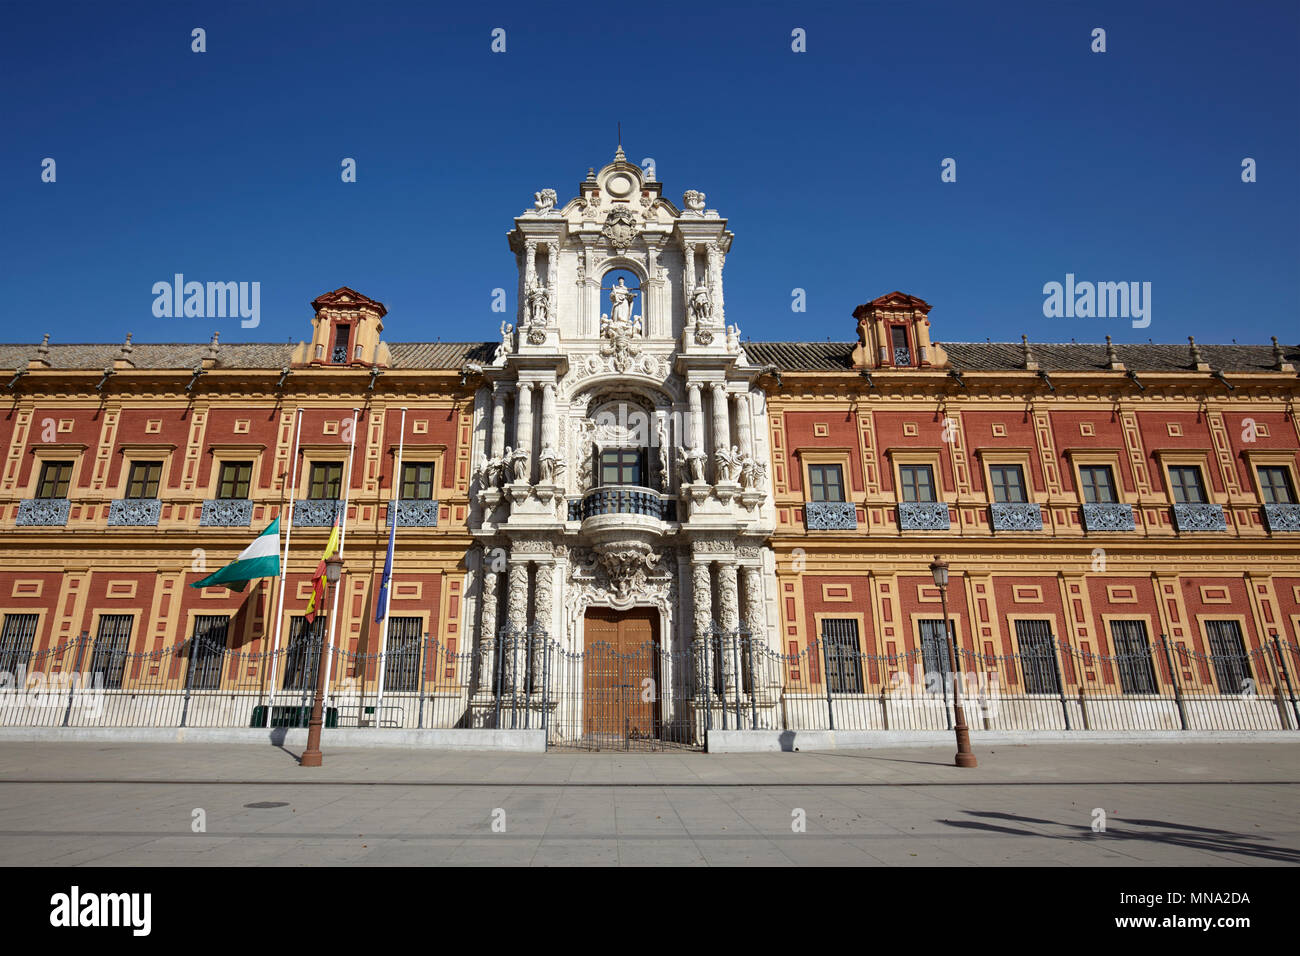 The baroque facade of Palace of San Telmo, Seville, Spain Stock Photo